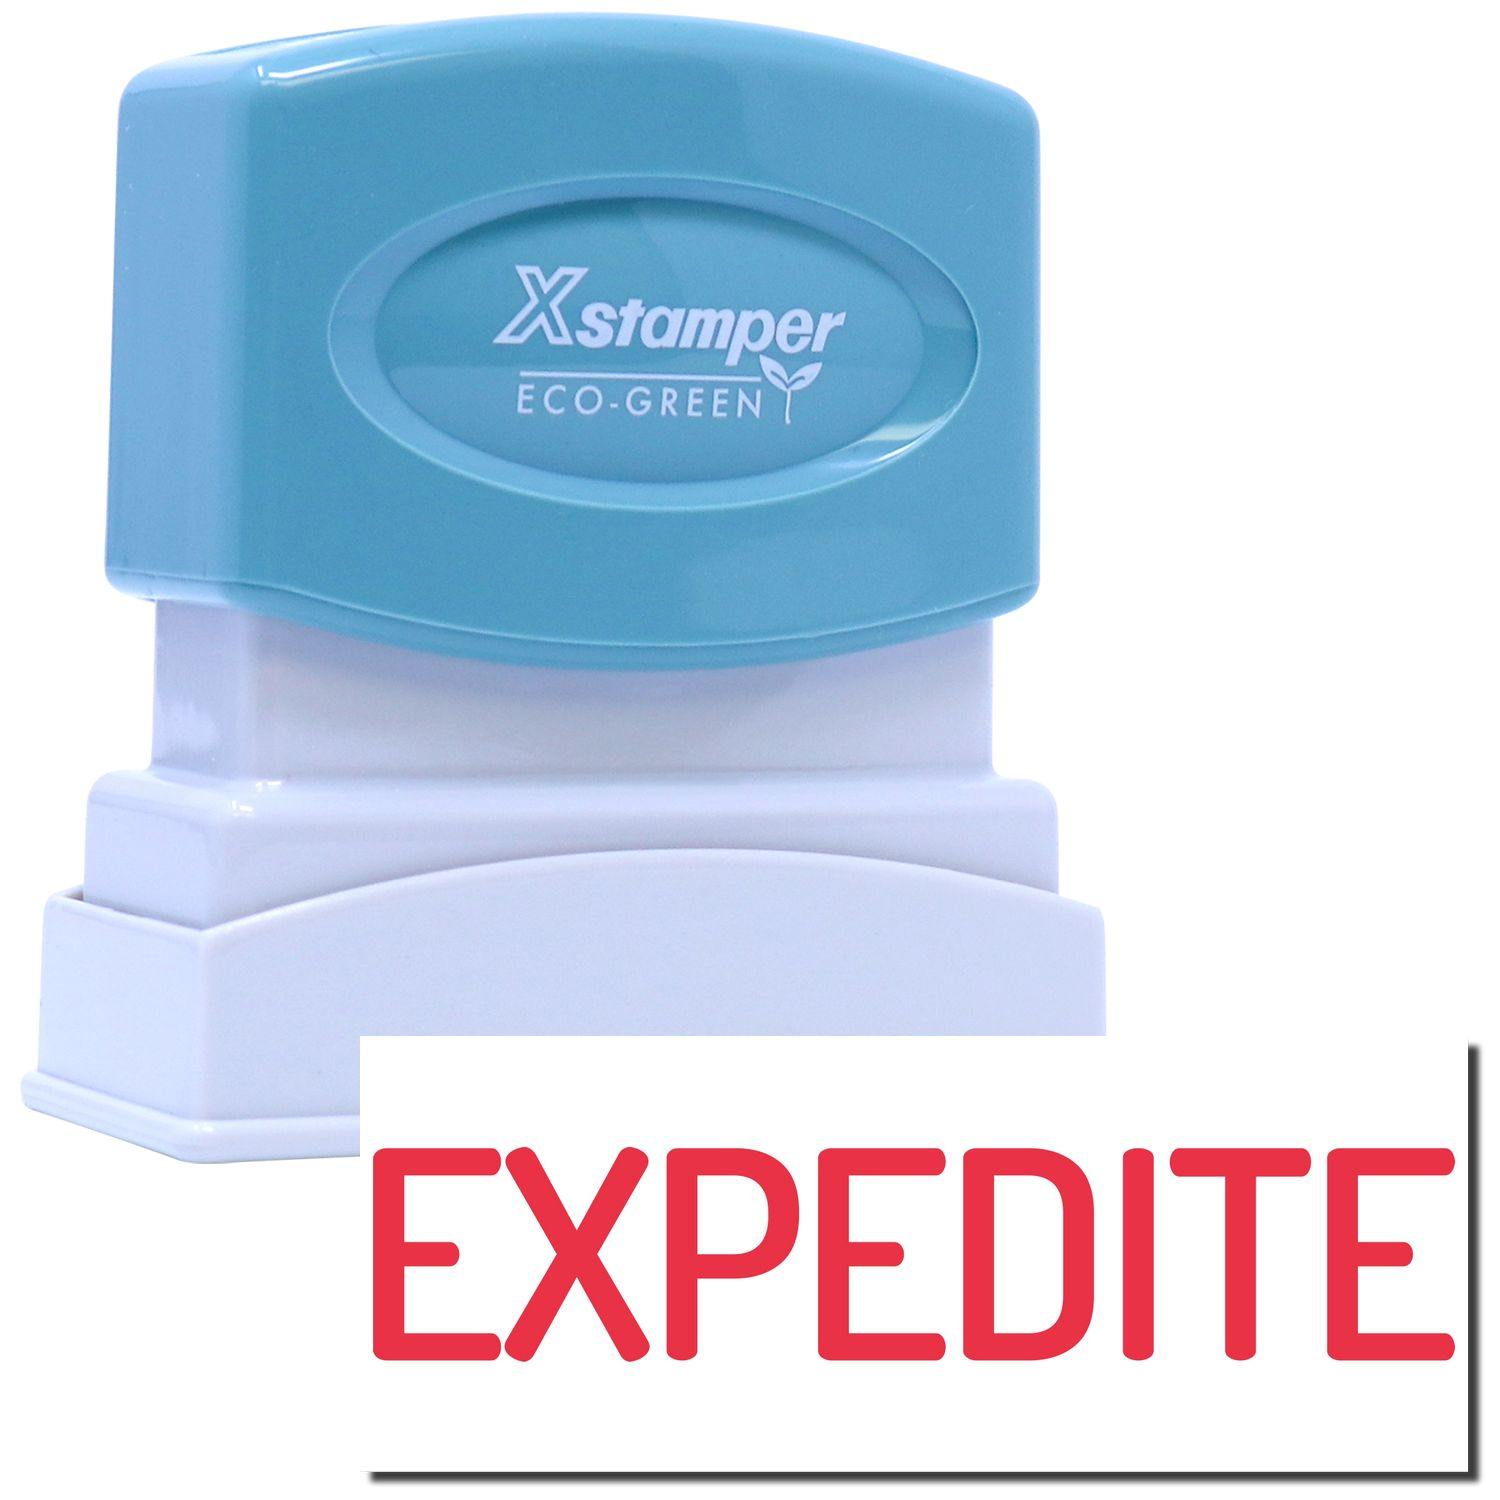 Expedite Xstamper Stamp Main Image